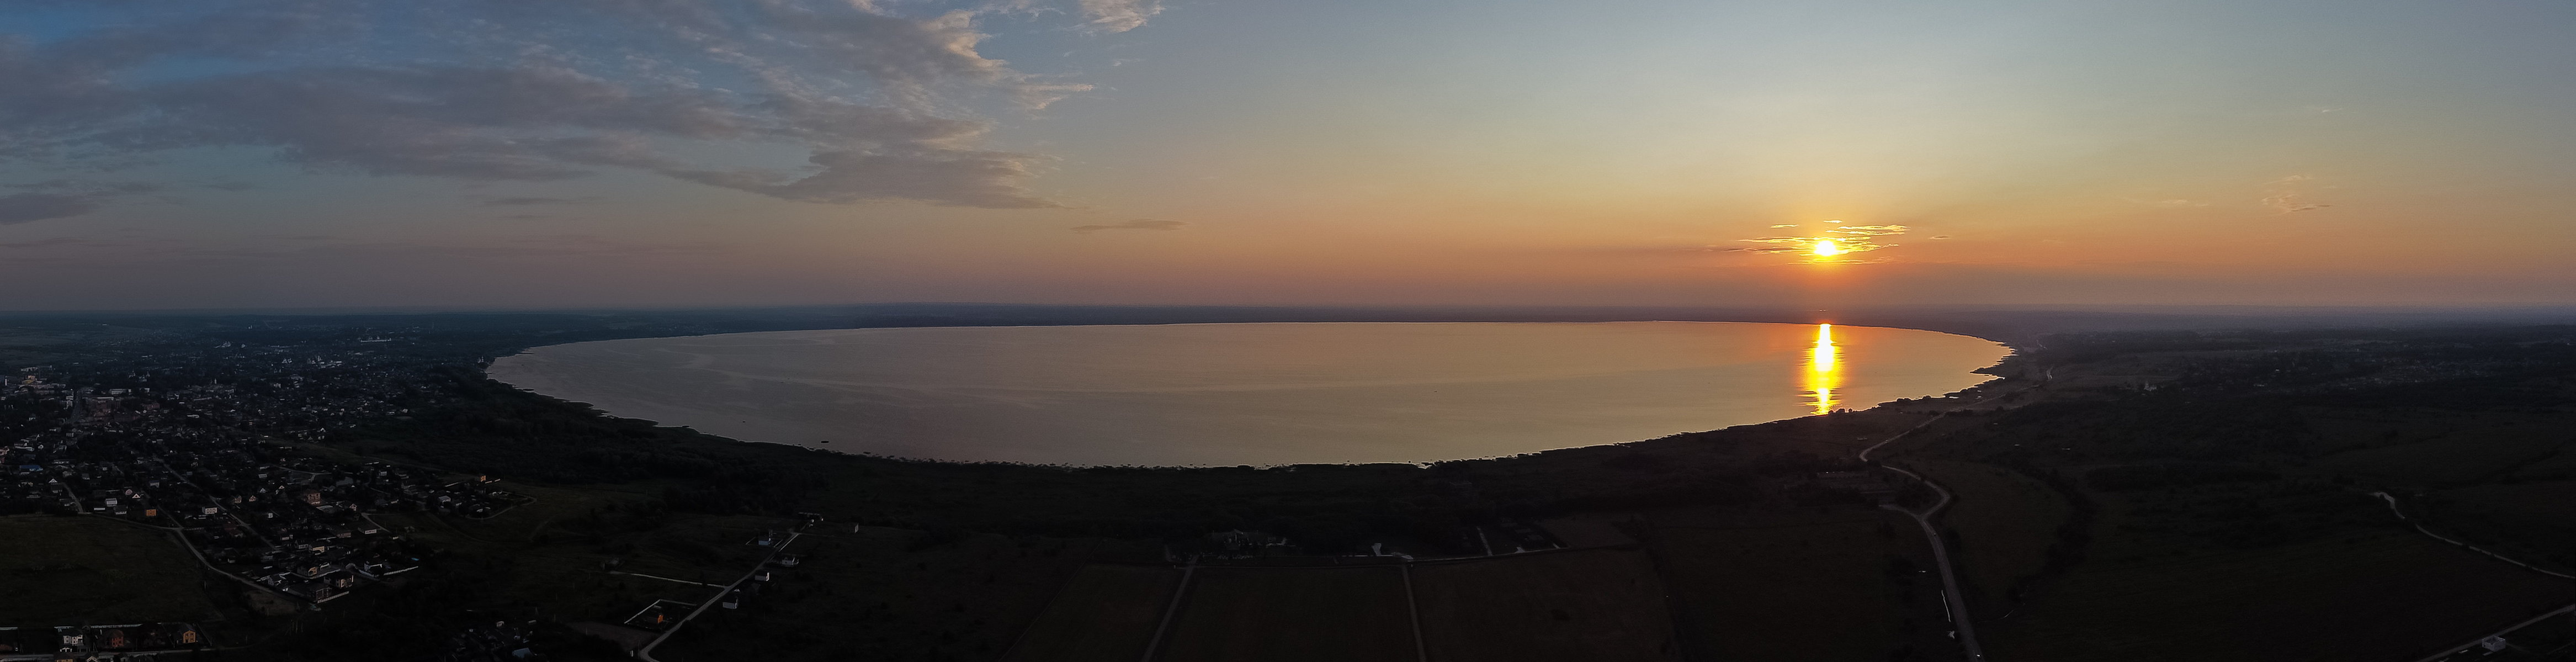 Закат на Плещеевом озере